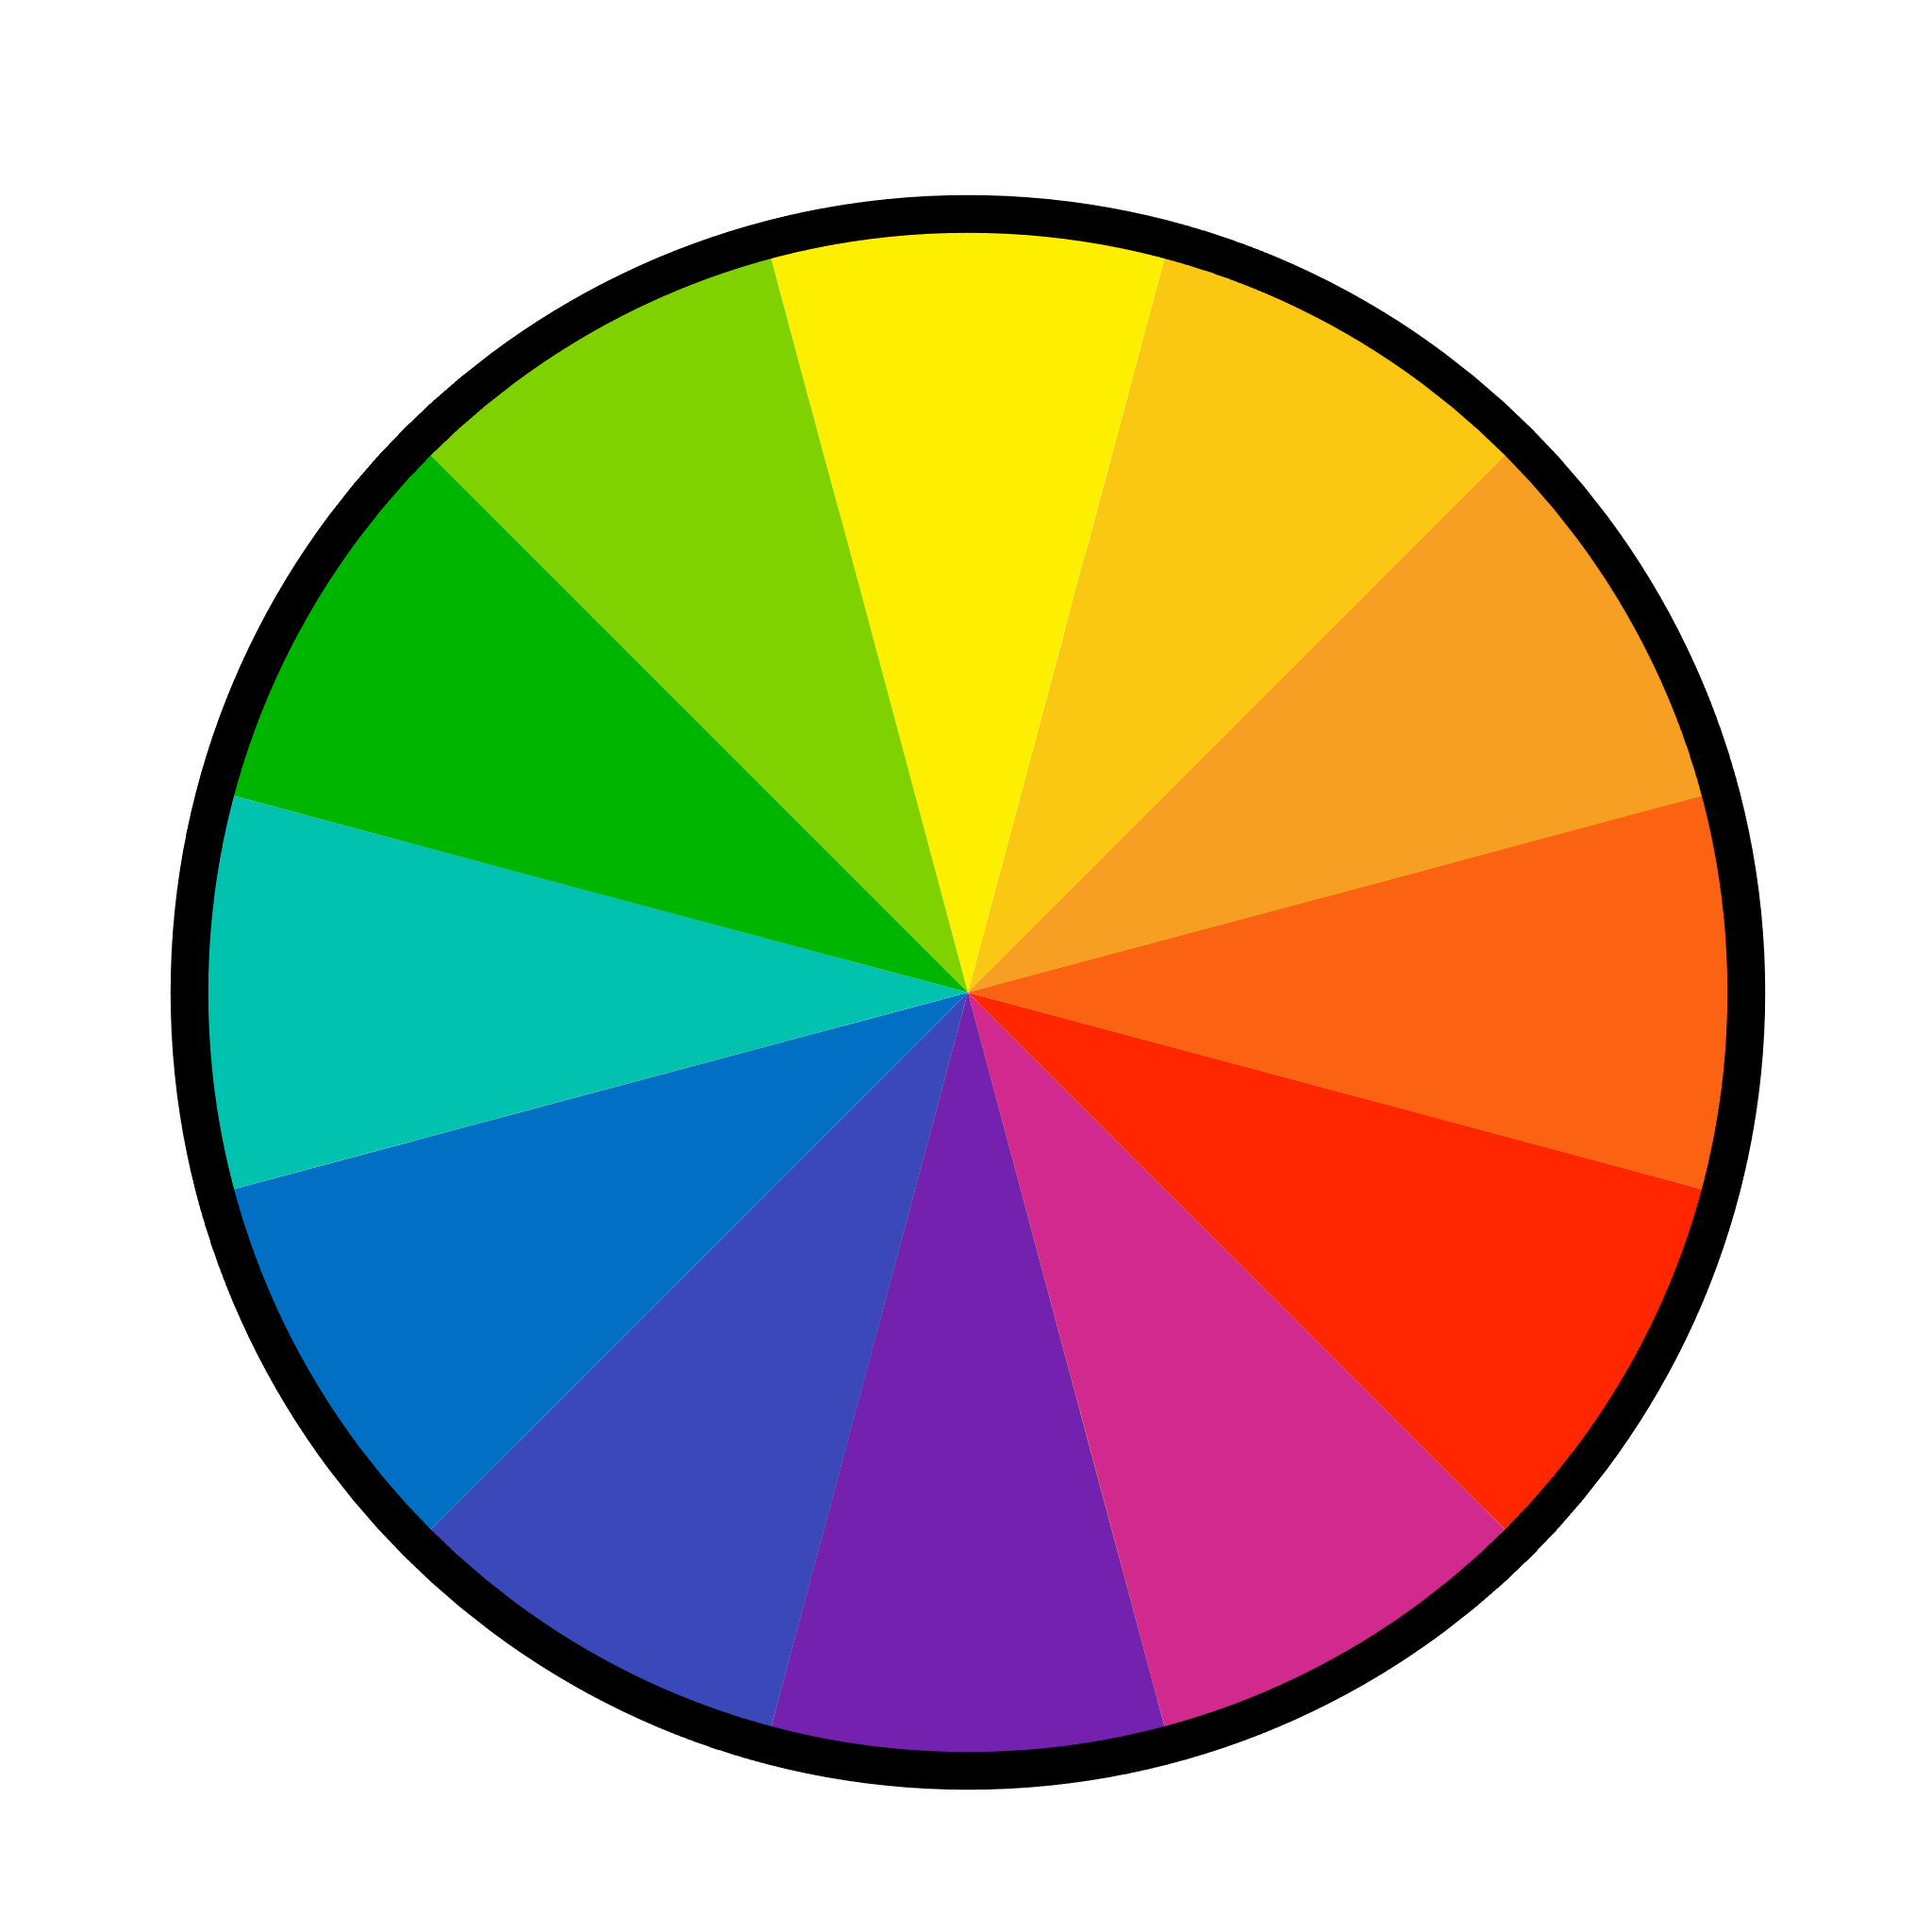 Ein Kreis gefüllt mit den Farben des Regenbogens